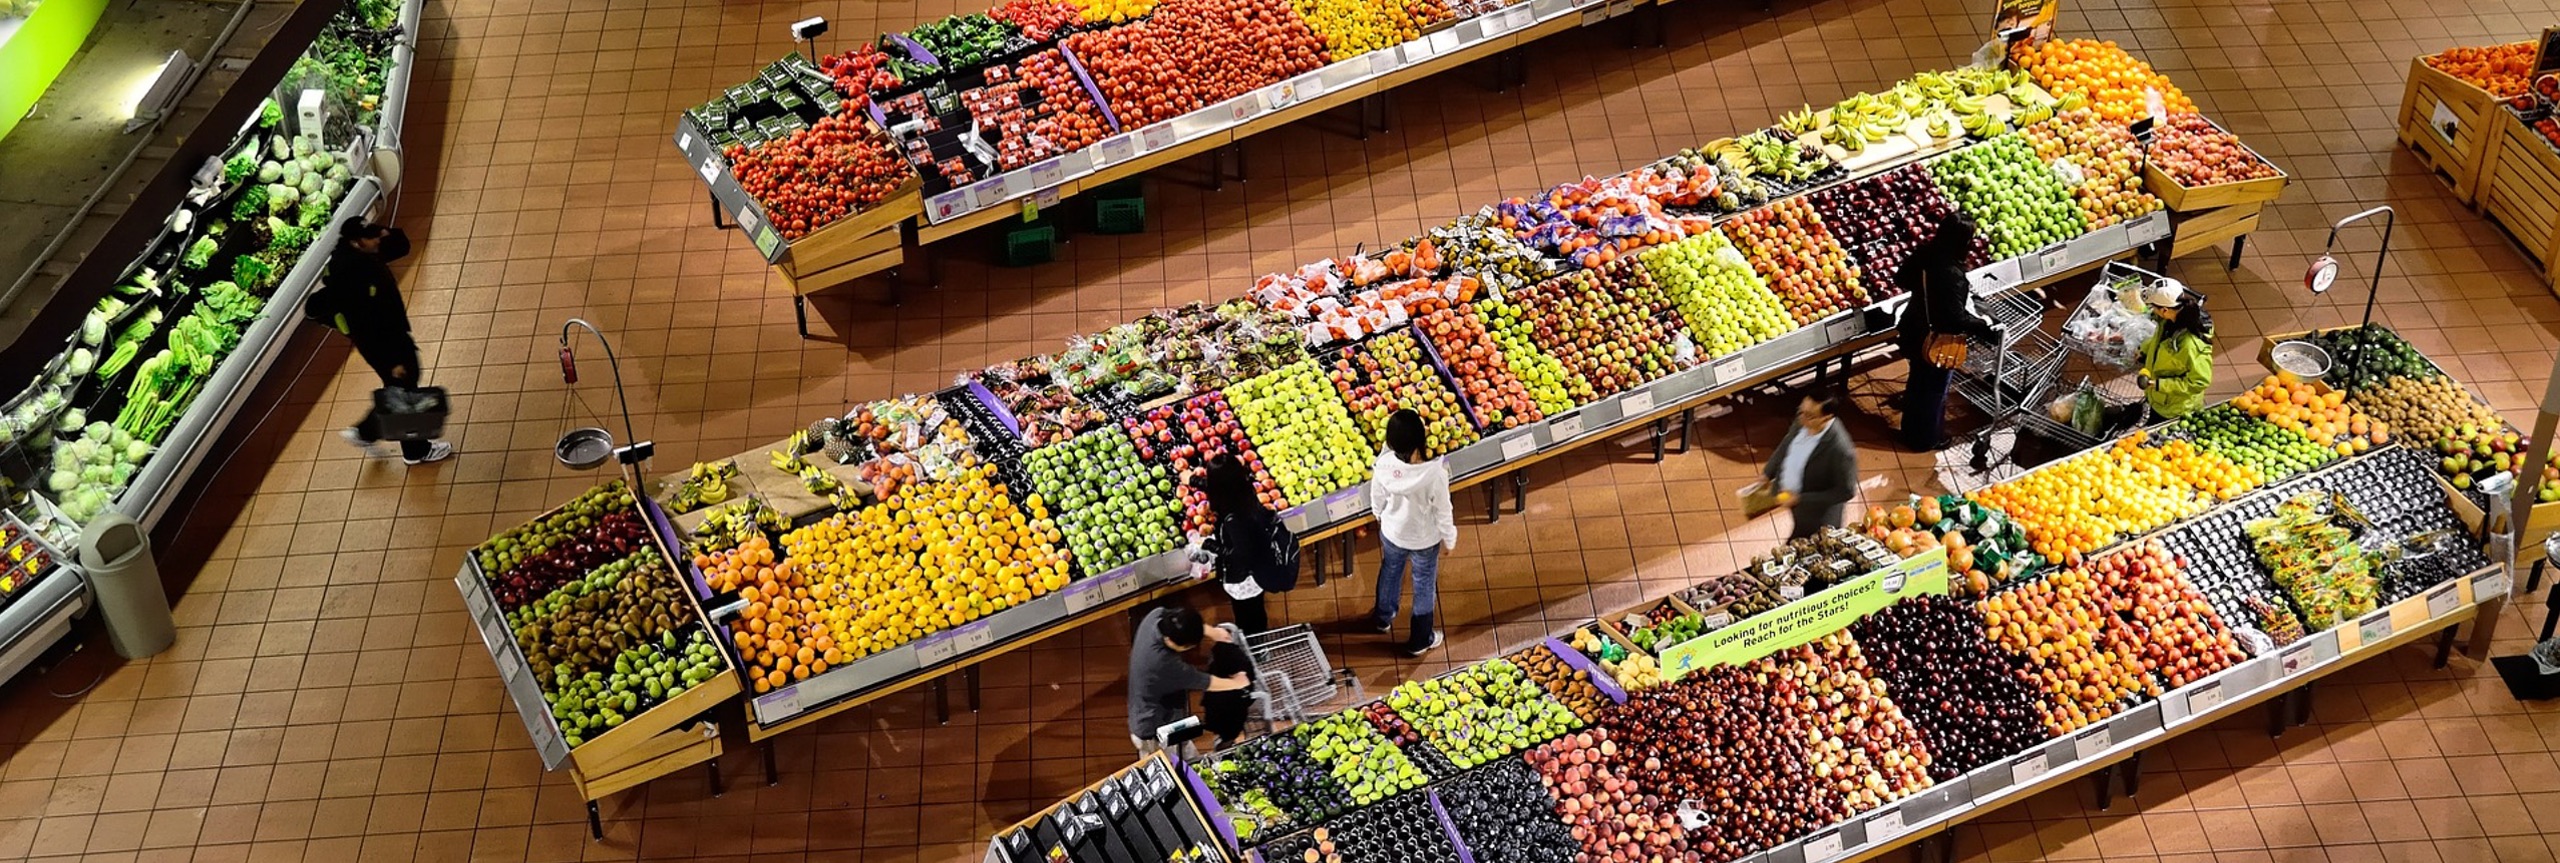 Groente en fruit afdeling van een supermarkt met verschillende groente en fruit